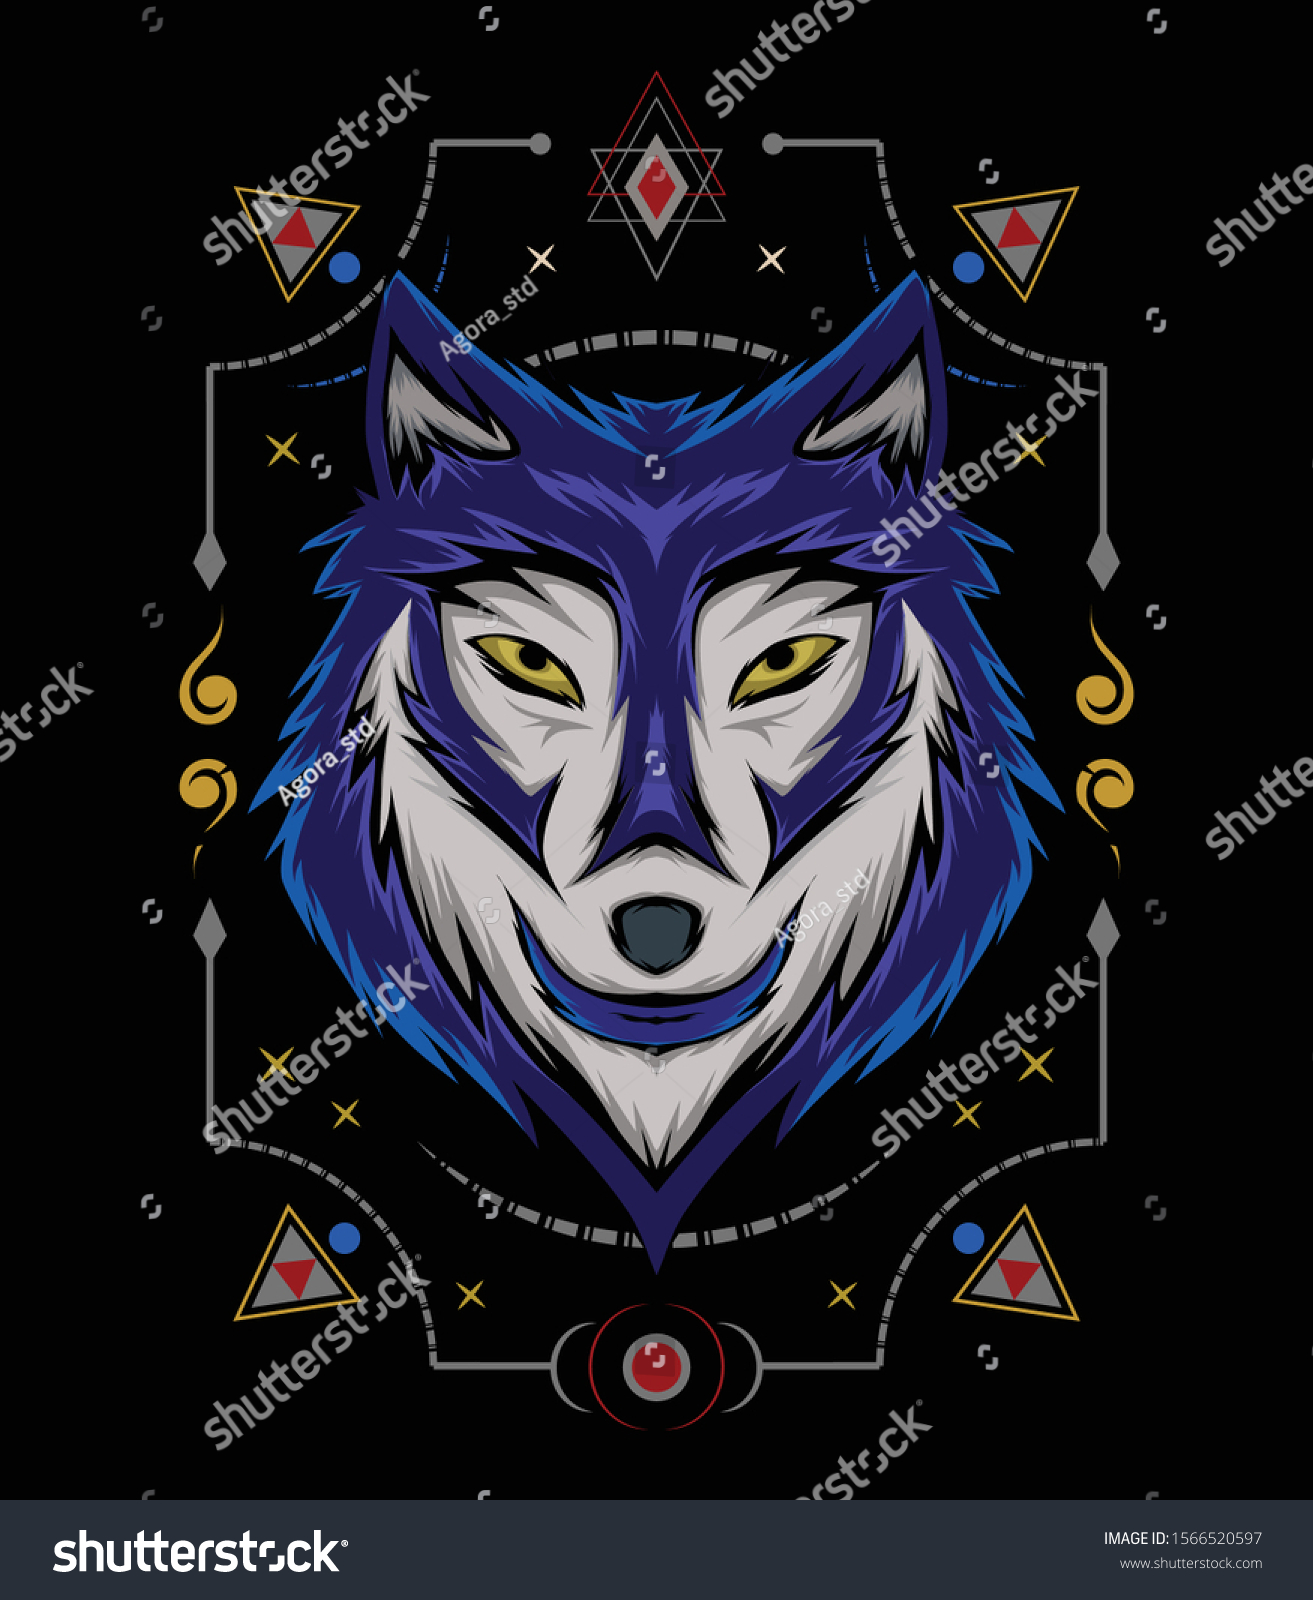 オオカミの顔のベクター画像デザイン ウルフのマスコットベクター画像 オオカミの正面対称画像 頭狼のイラスト のベクター画像素材 ロイヤリティフリー